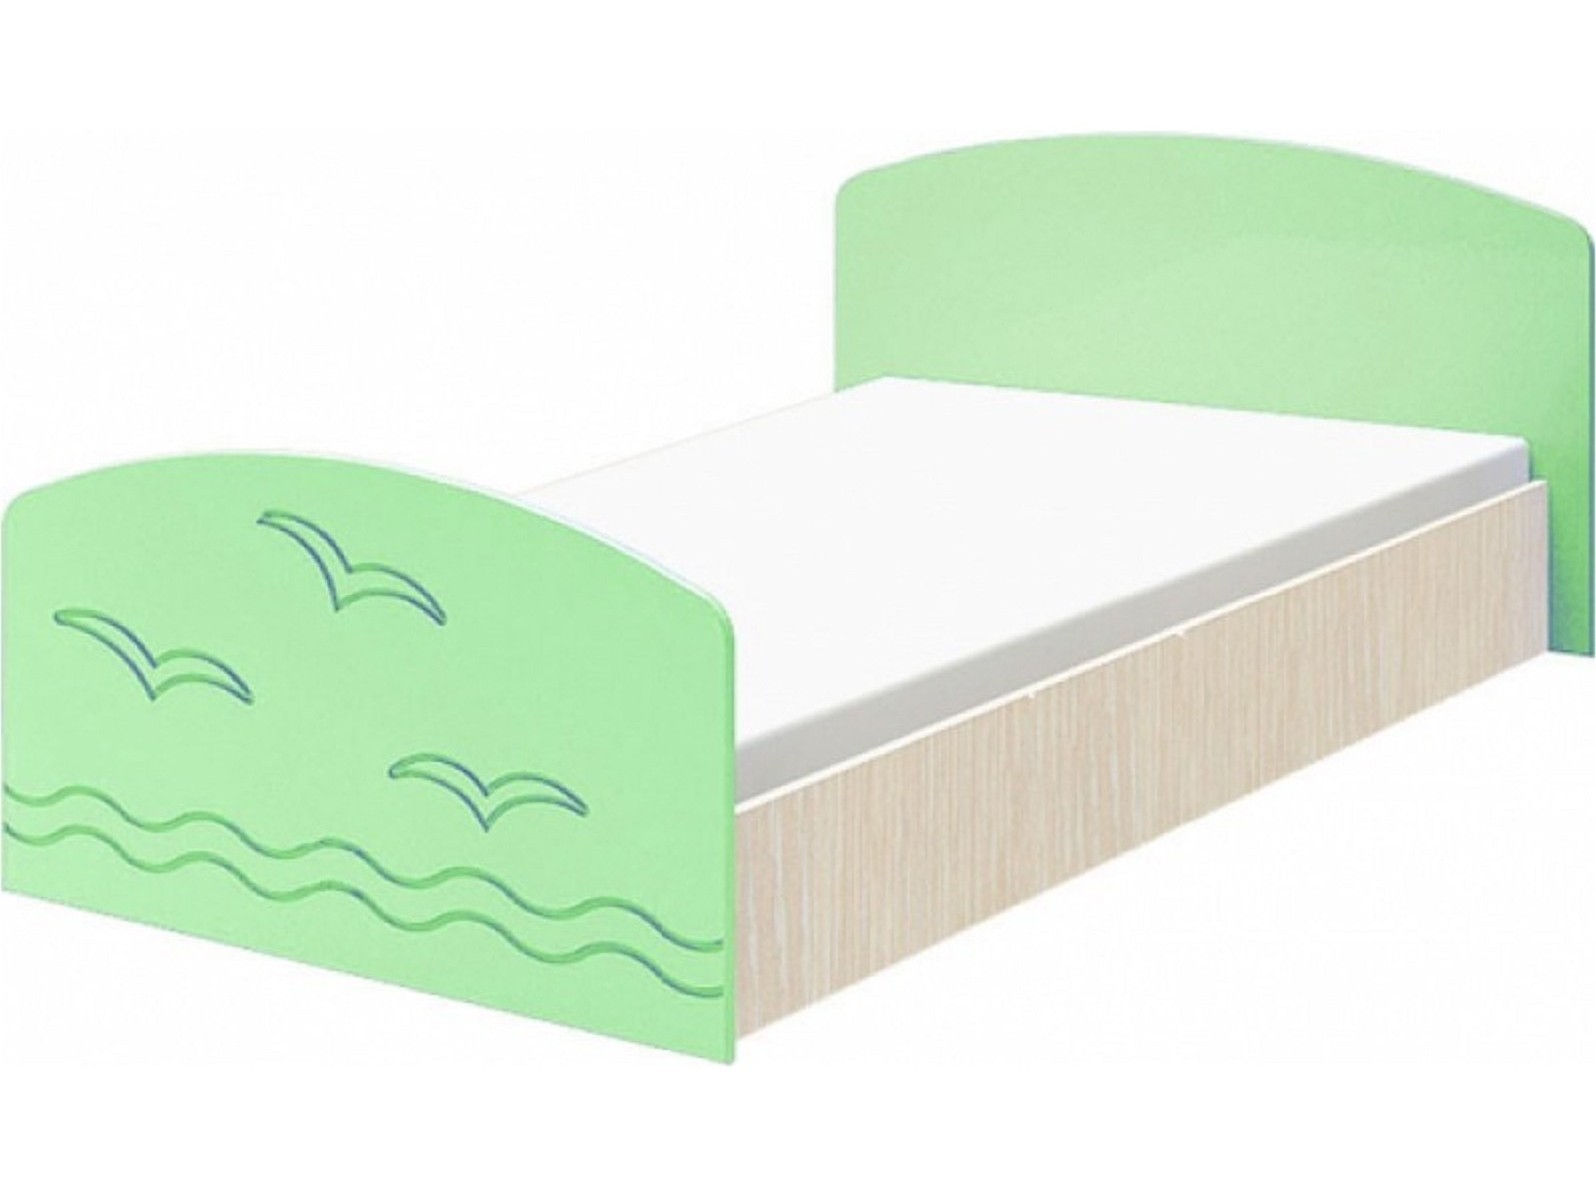 Юниор-2 Детская кровать 80, матовый (Салатовый, Дуб белёный) Зеленый, МДФ, ЛДСП юниор 2 комод матовый салатовый дуб белёный салатовый мдф лдсп